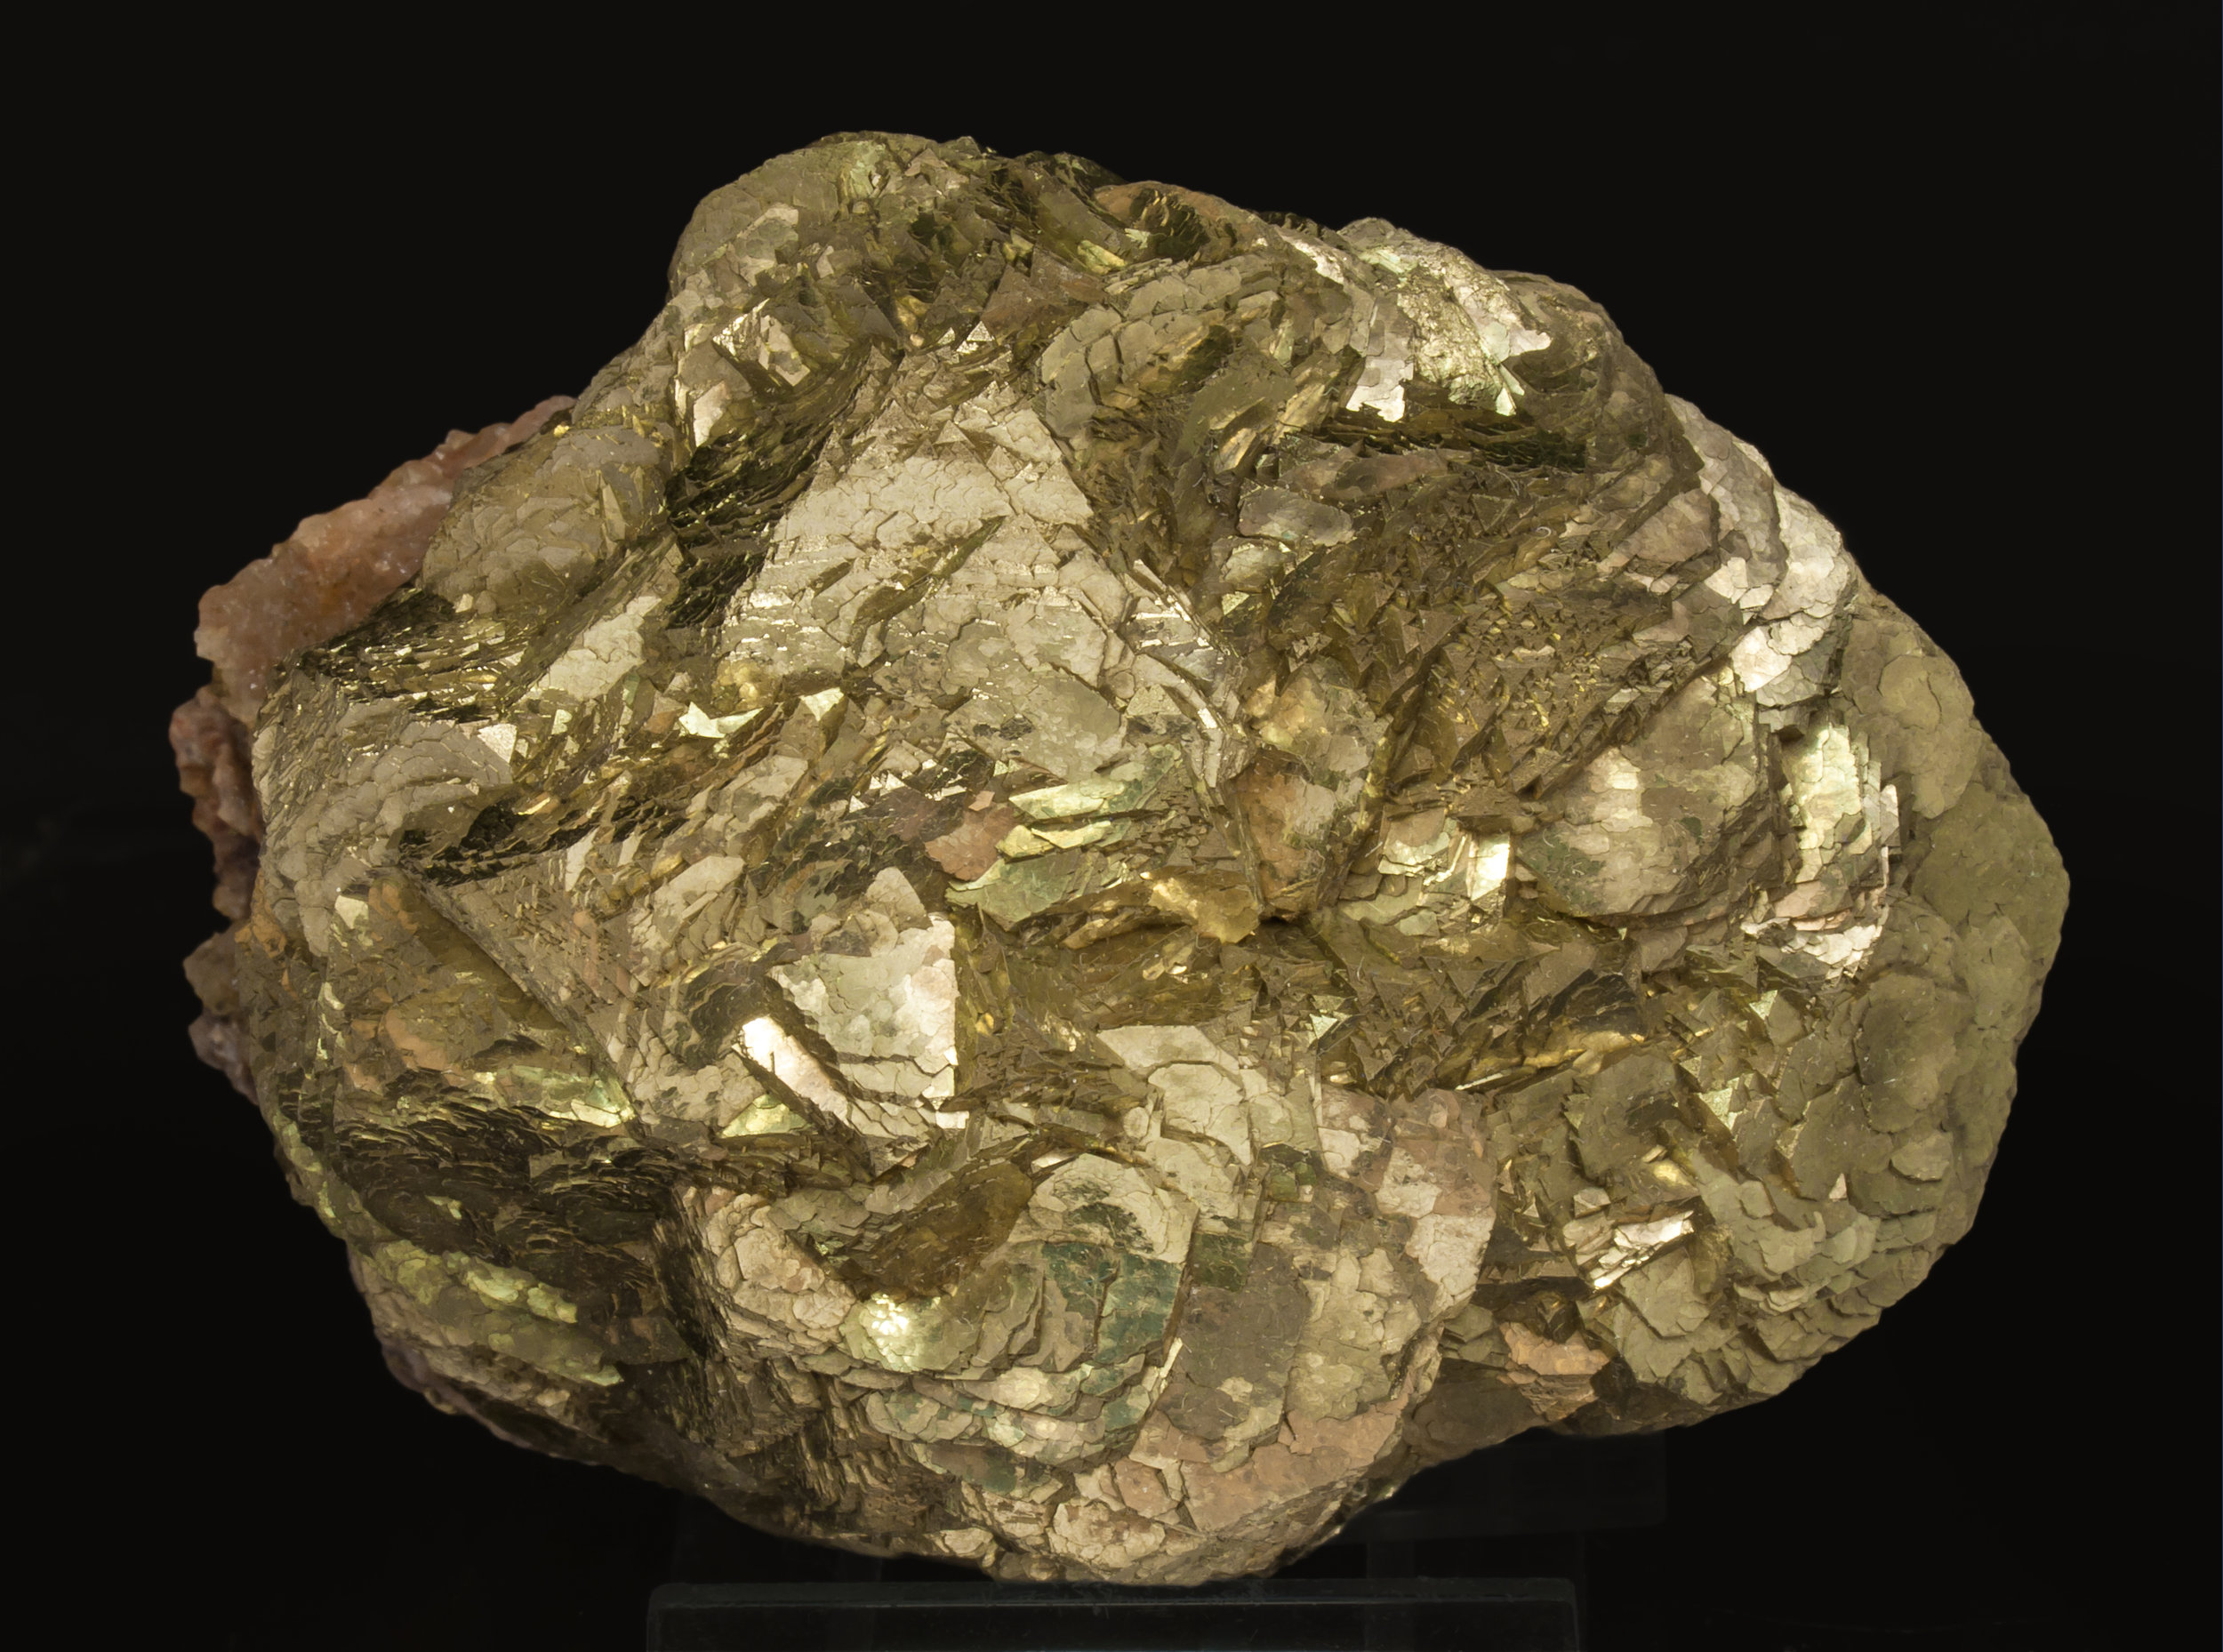 specimens/s_imagesAL3/Pyrite-MQ28AL3f.jpg